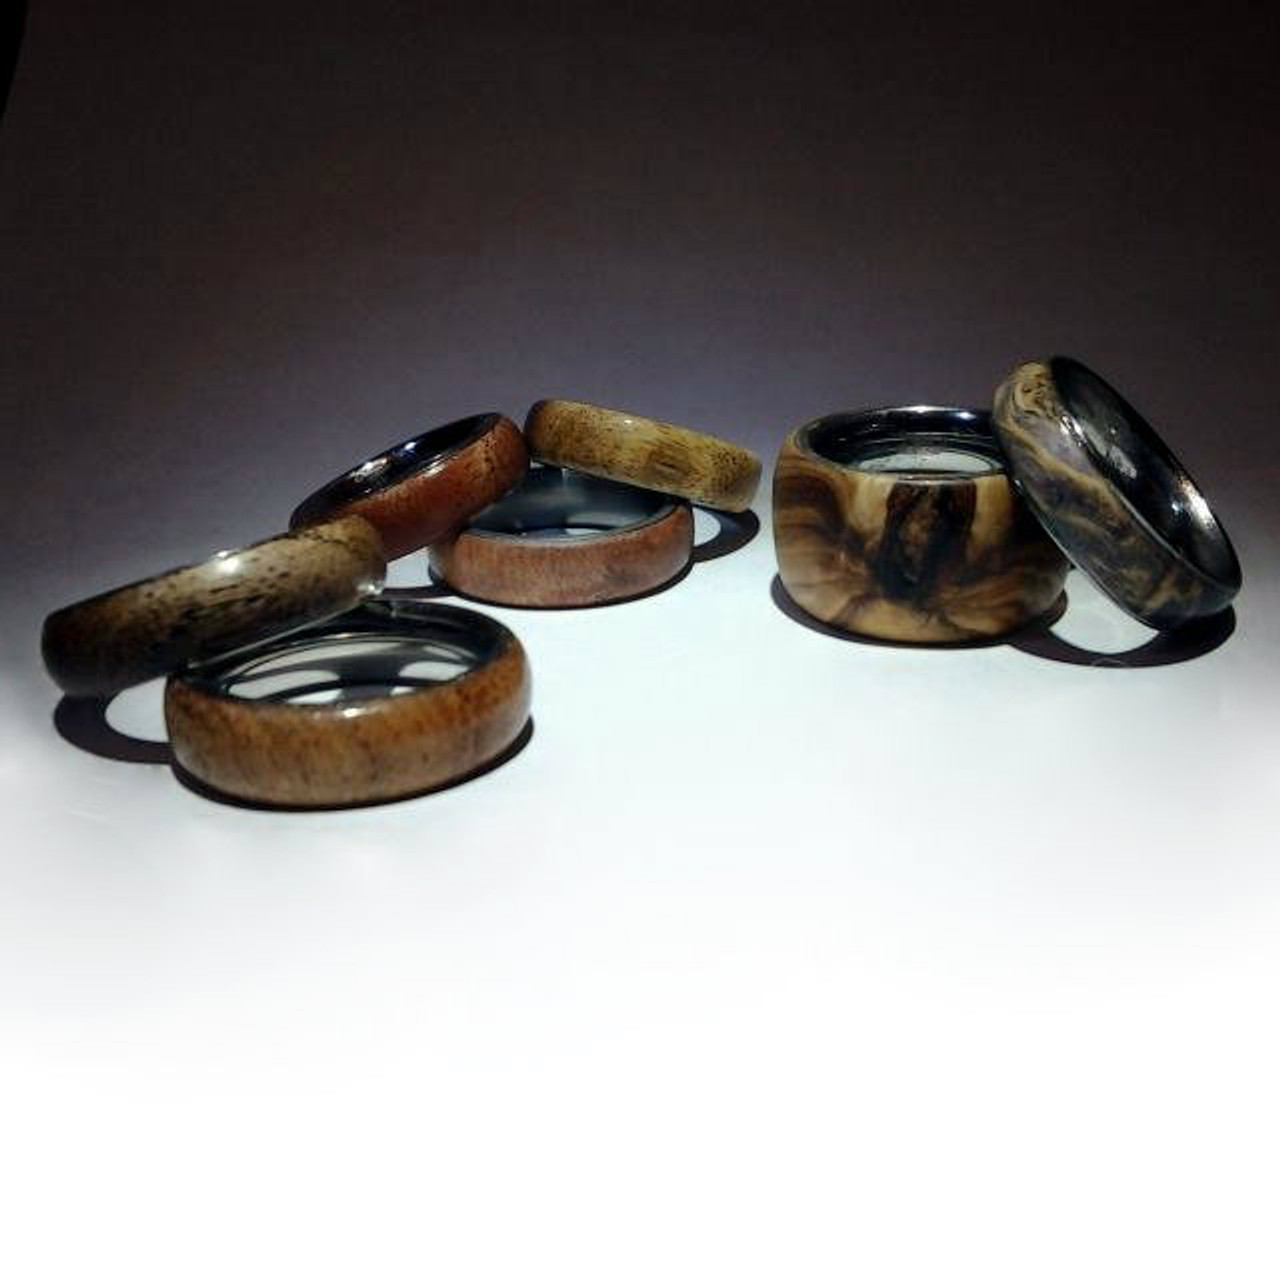 Ring Making Supplies UK - Ring Cores, Mandrels